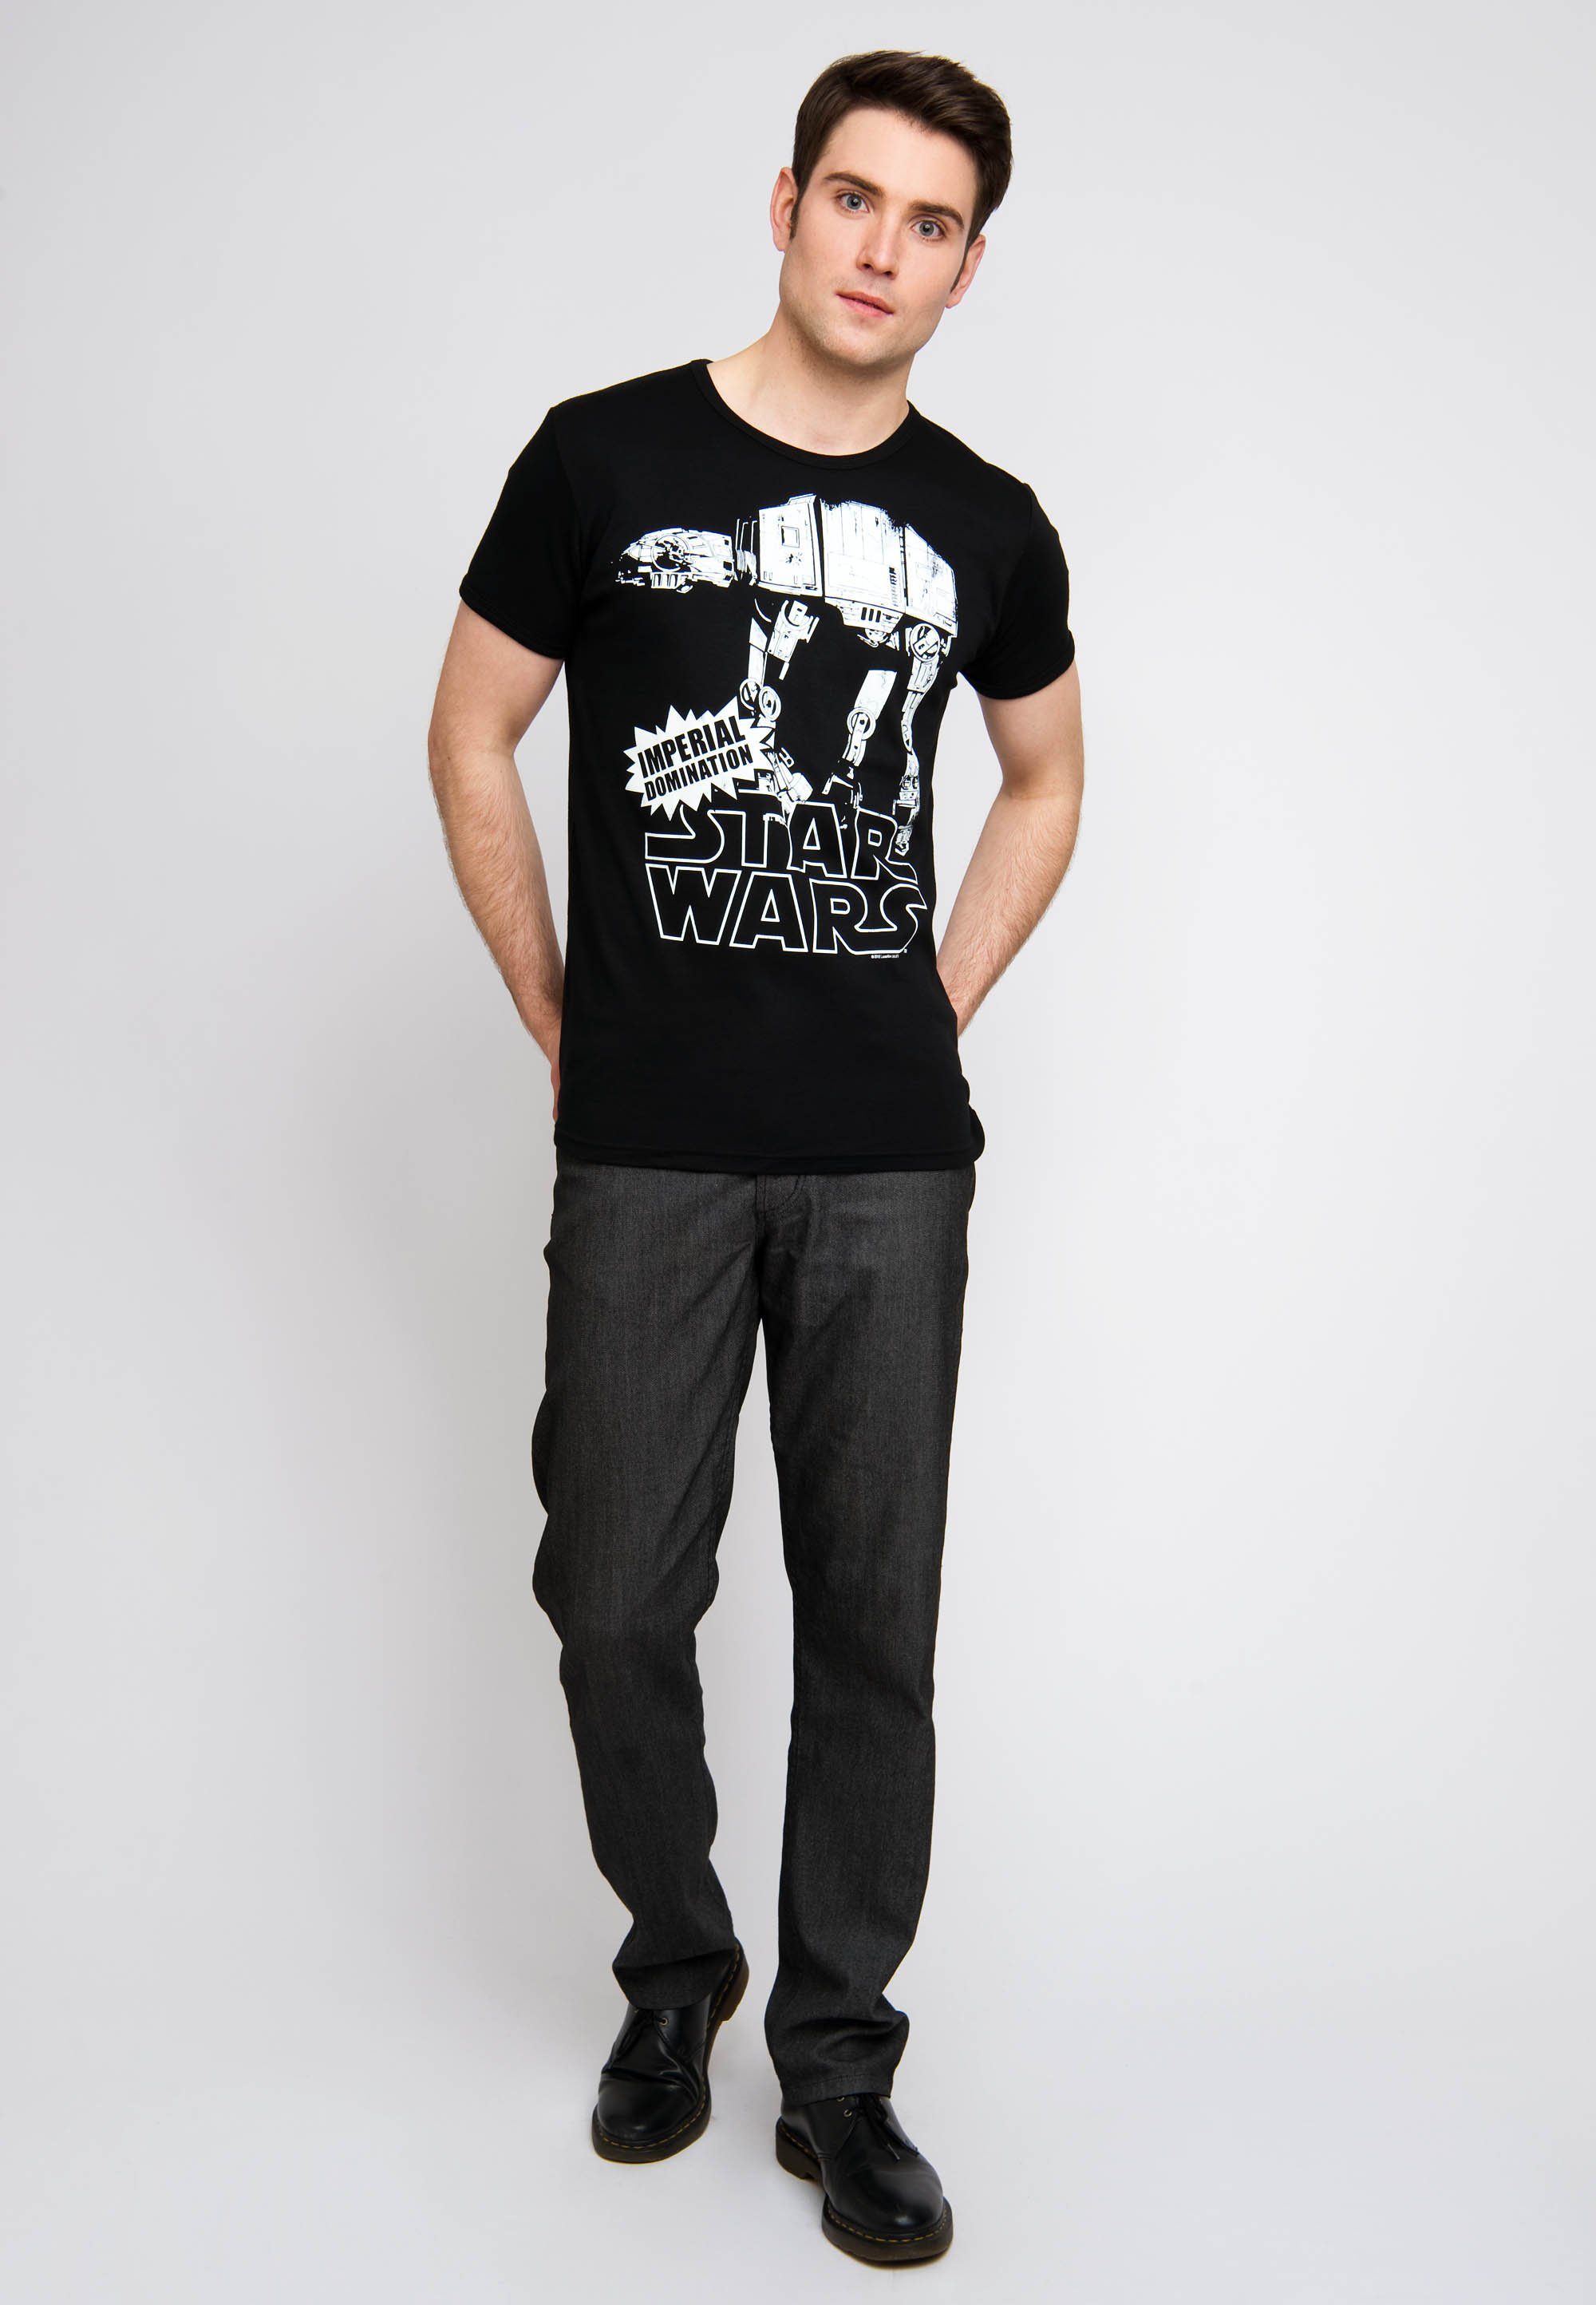 Star LOGOSHIRT T-Shirt großem AT-AT mit Wars-Aufdruck